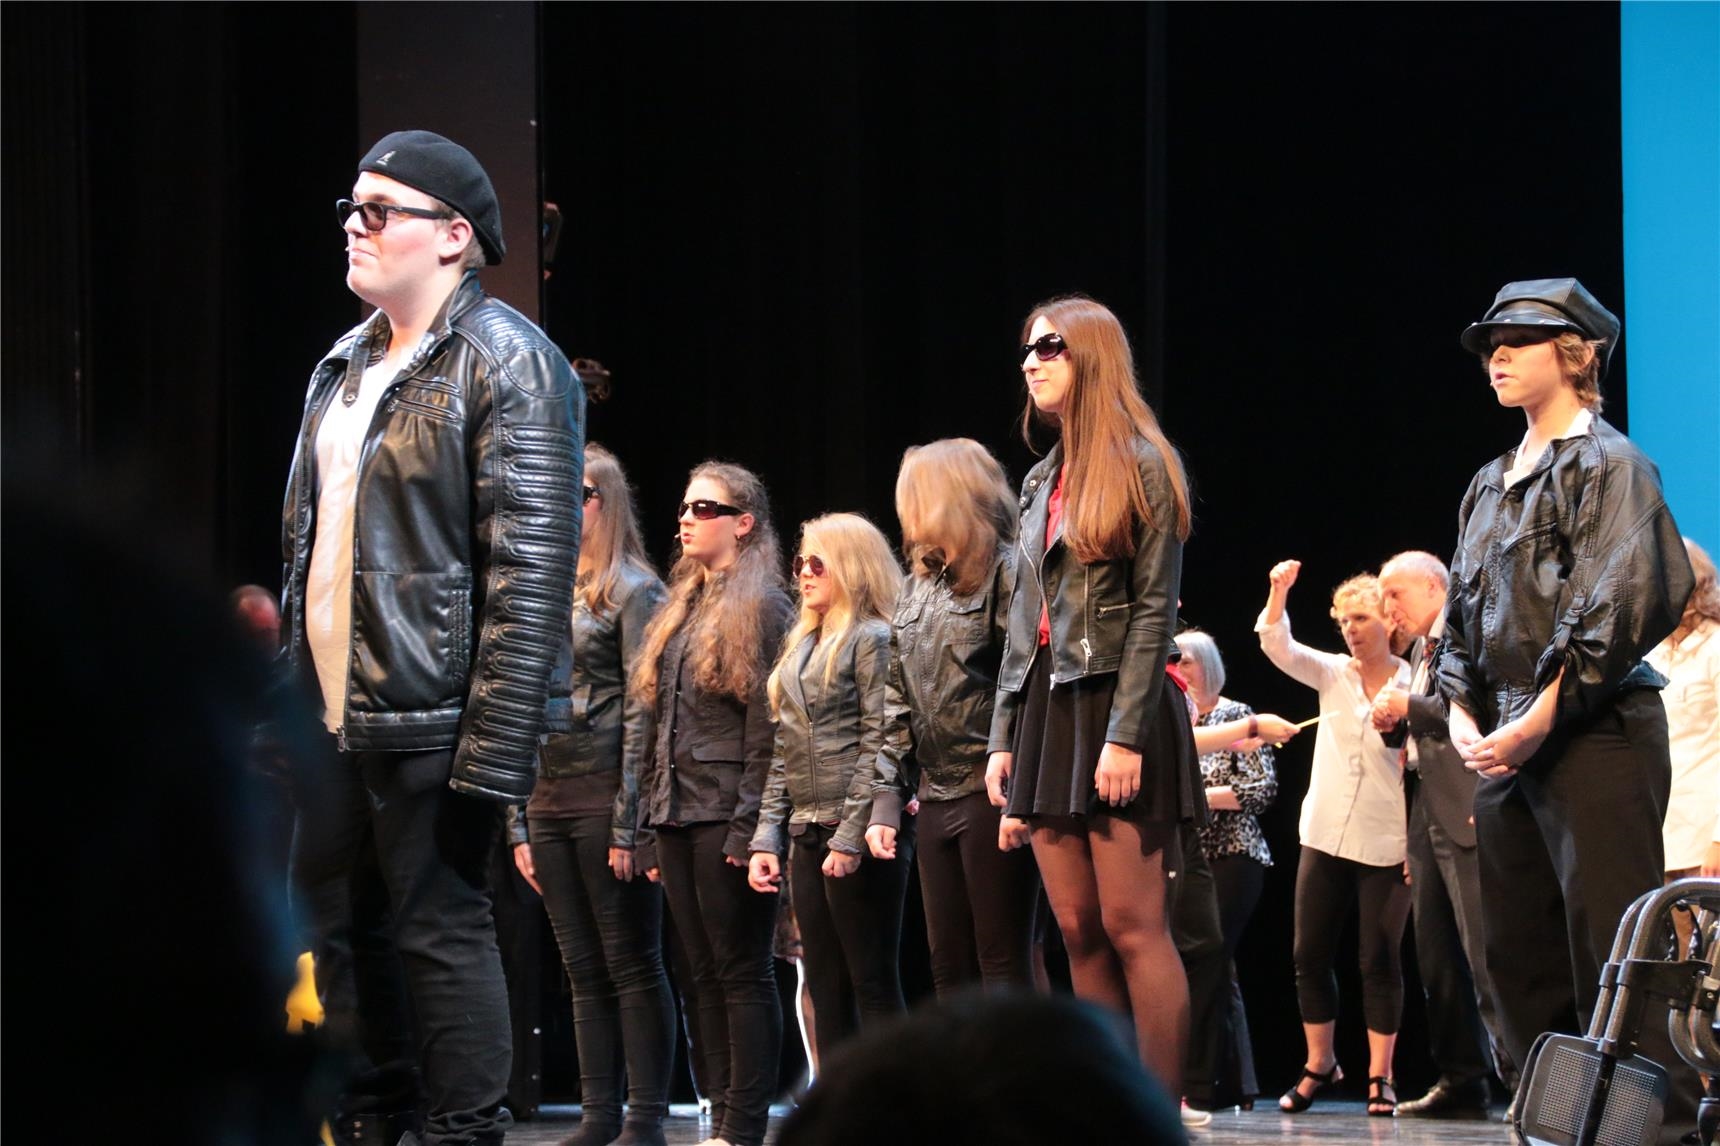 Das Foto zeigt eine Gruppe als Rocker verkleideter Jungen und Mädchen auf einer Bühne (Harald Westbeld)